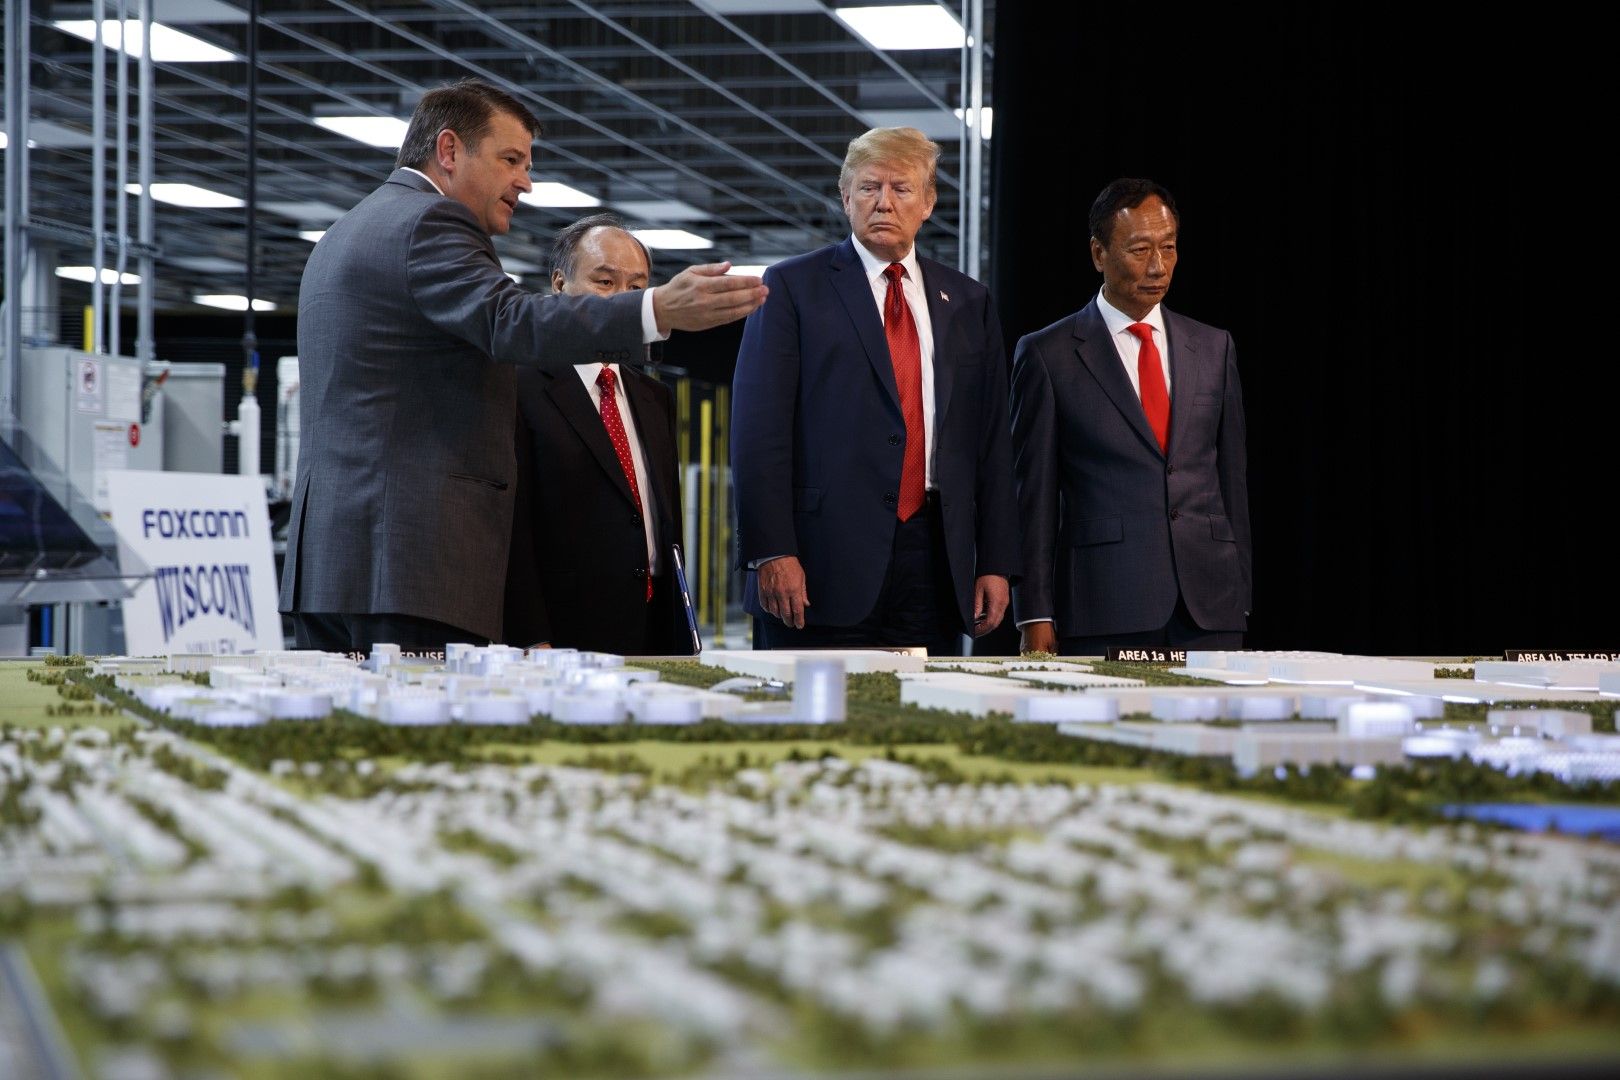 28 юни 2018 г., президентът Доналд Тръмп пред макети на проекта на Фокскон за завод в Уисконсин заедно с председателя на компанията Тери Гоу (вдясно)